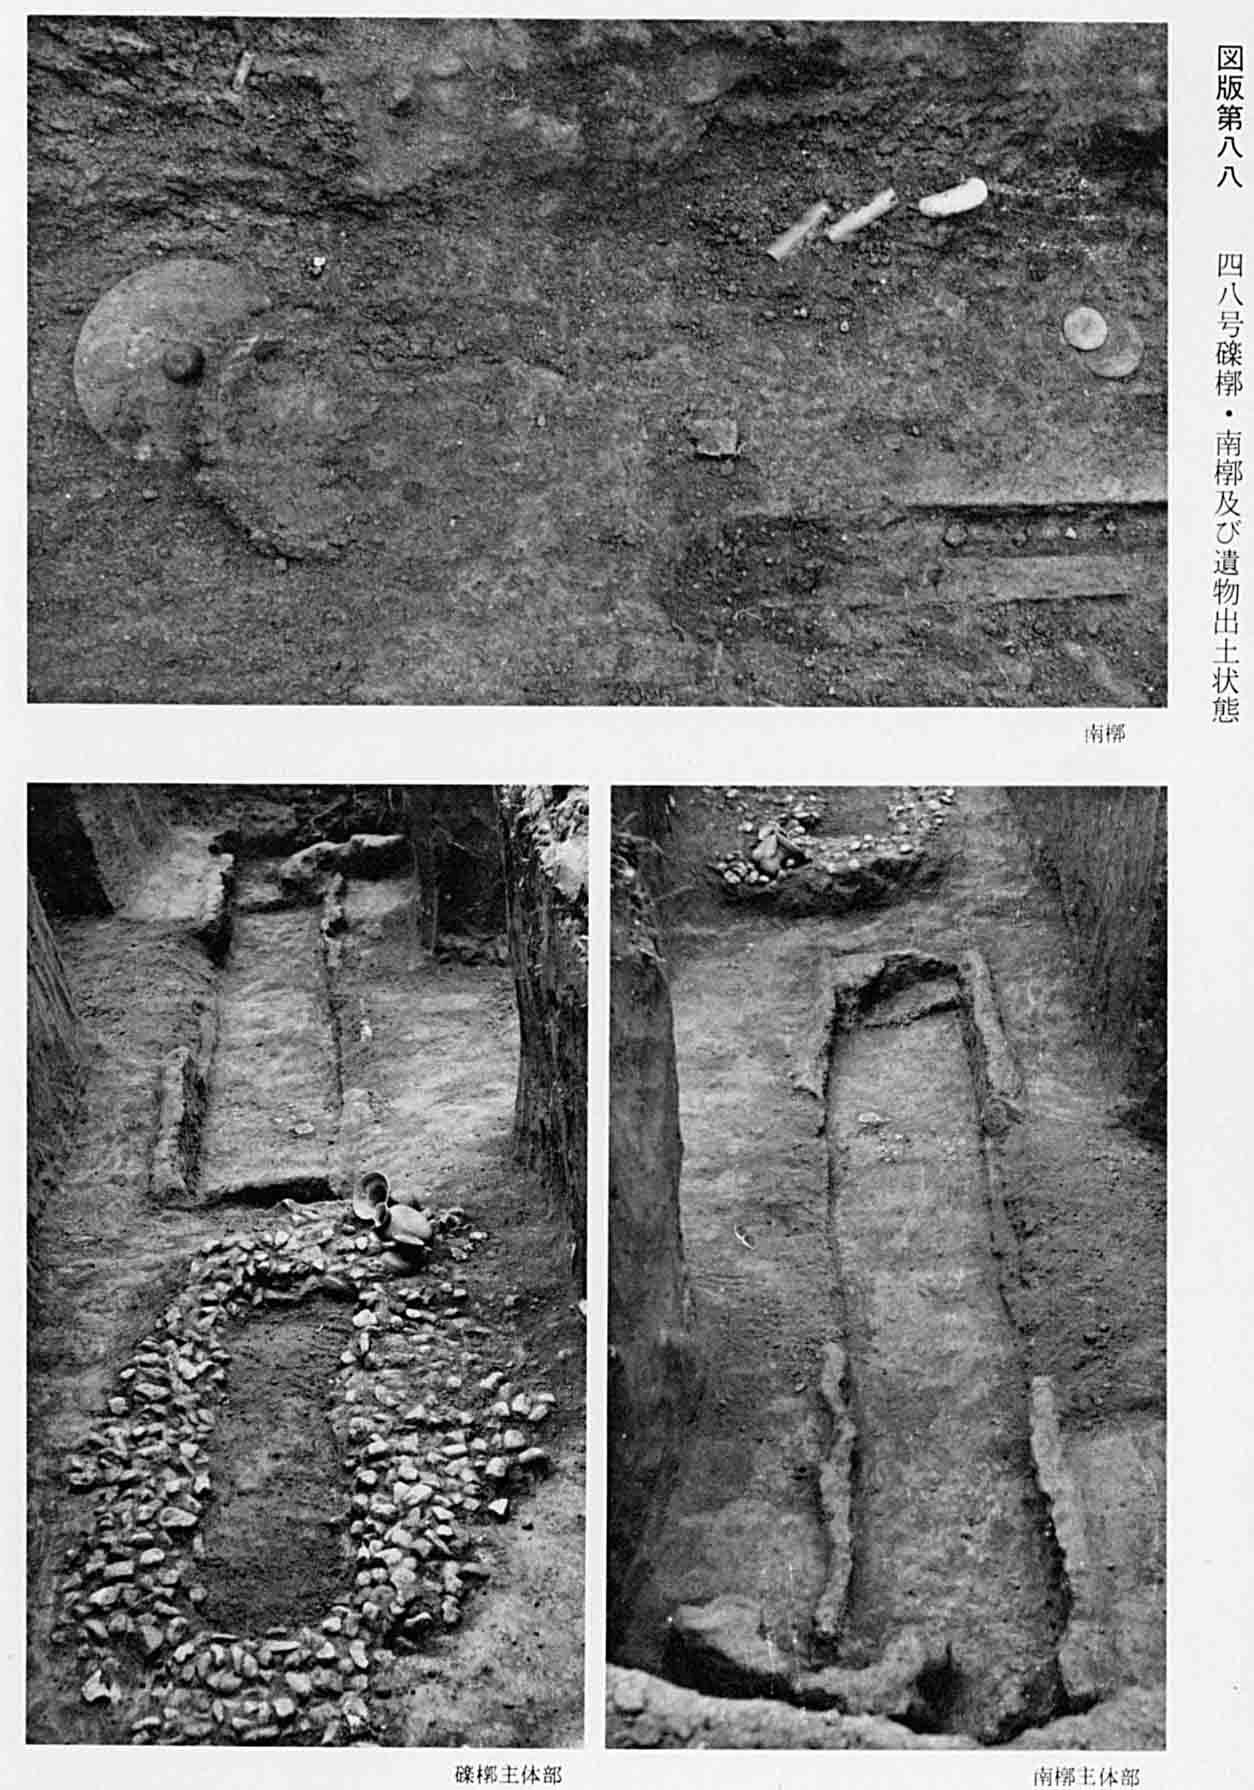 出土された状態の墓地を、3箇所から撮影したモノクロ写真（図版88）